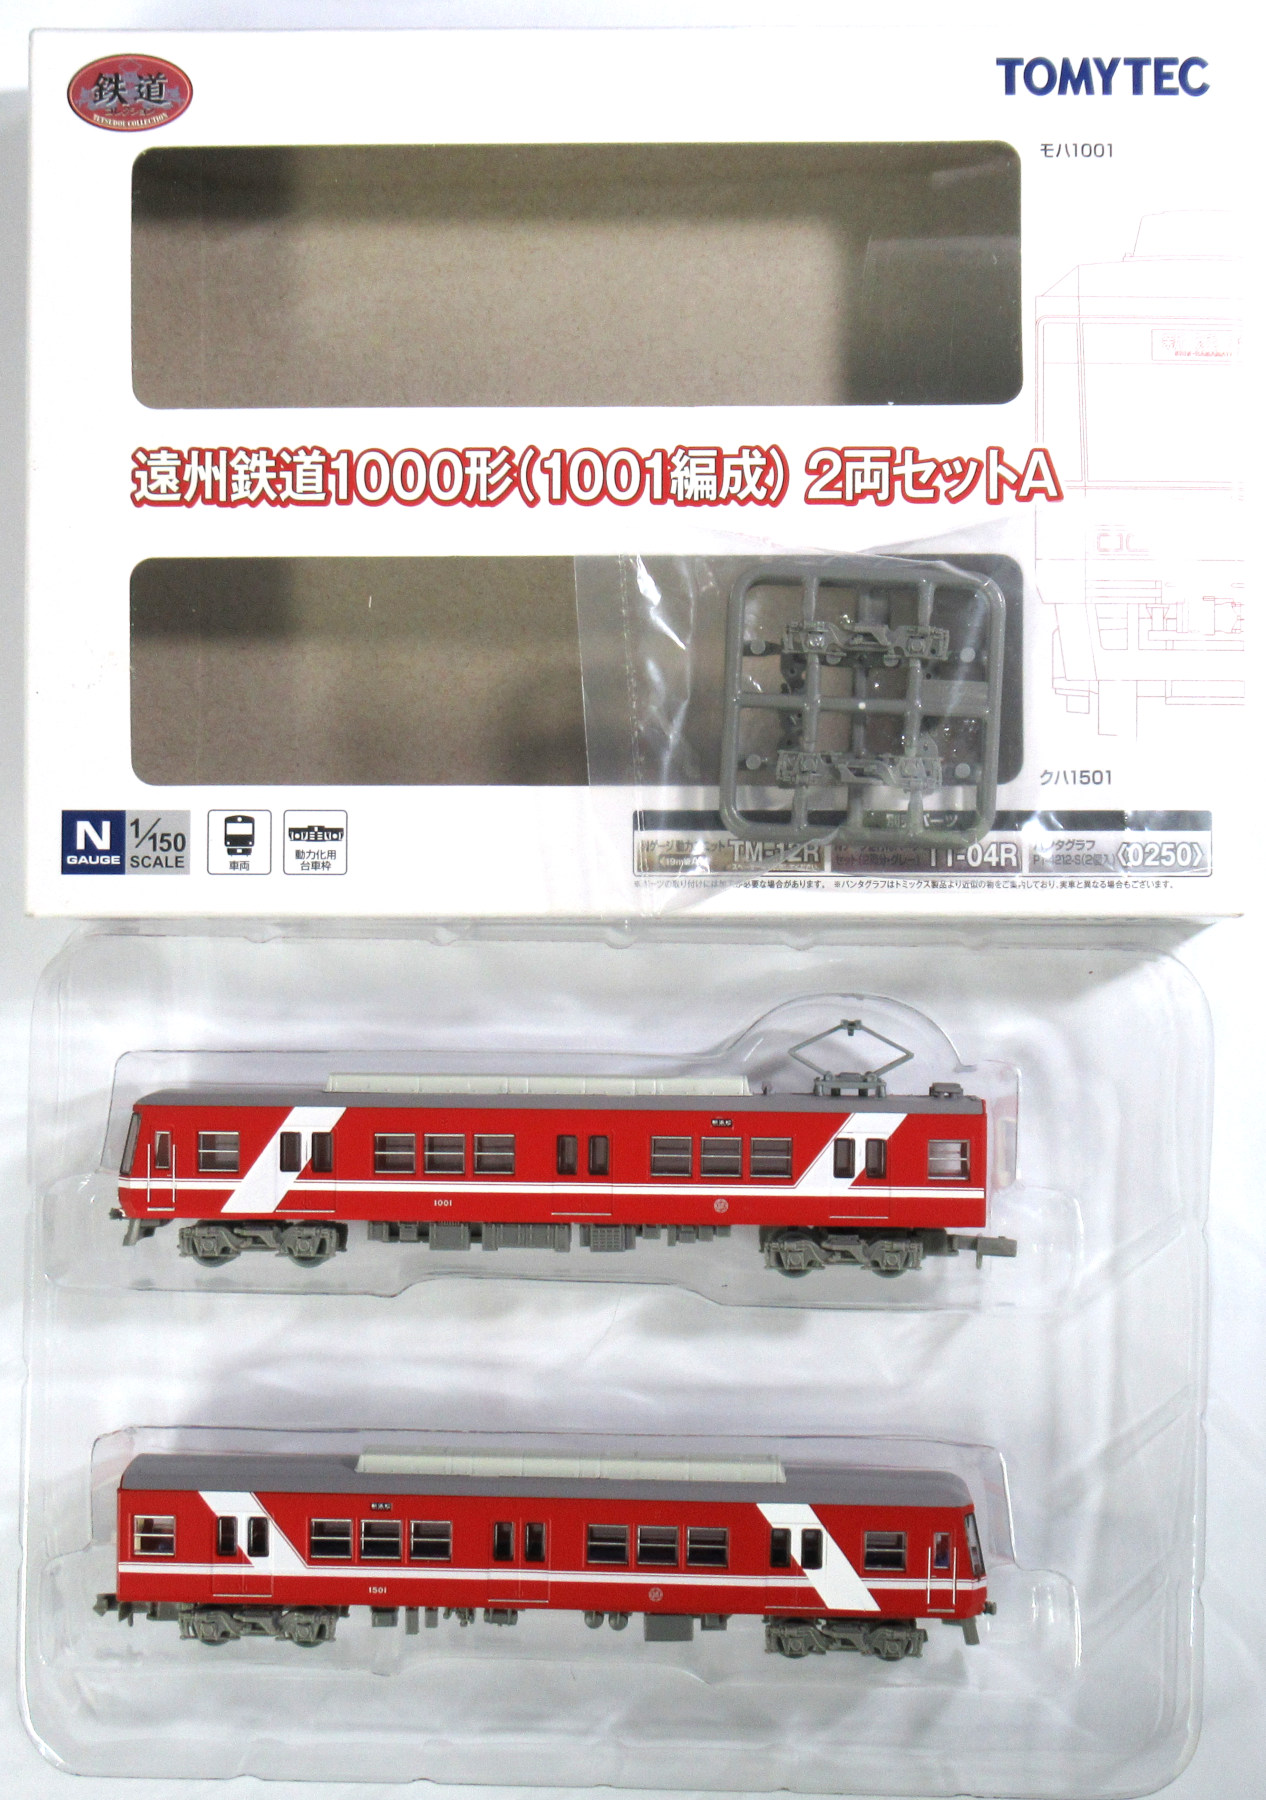 公式]鉄道模型((1410-1411) 鉄道コレクション 遠州鉄道 1000形 (1001 